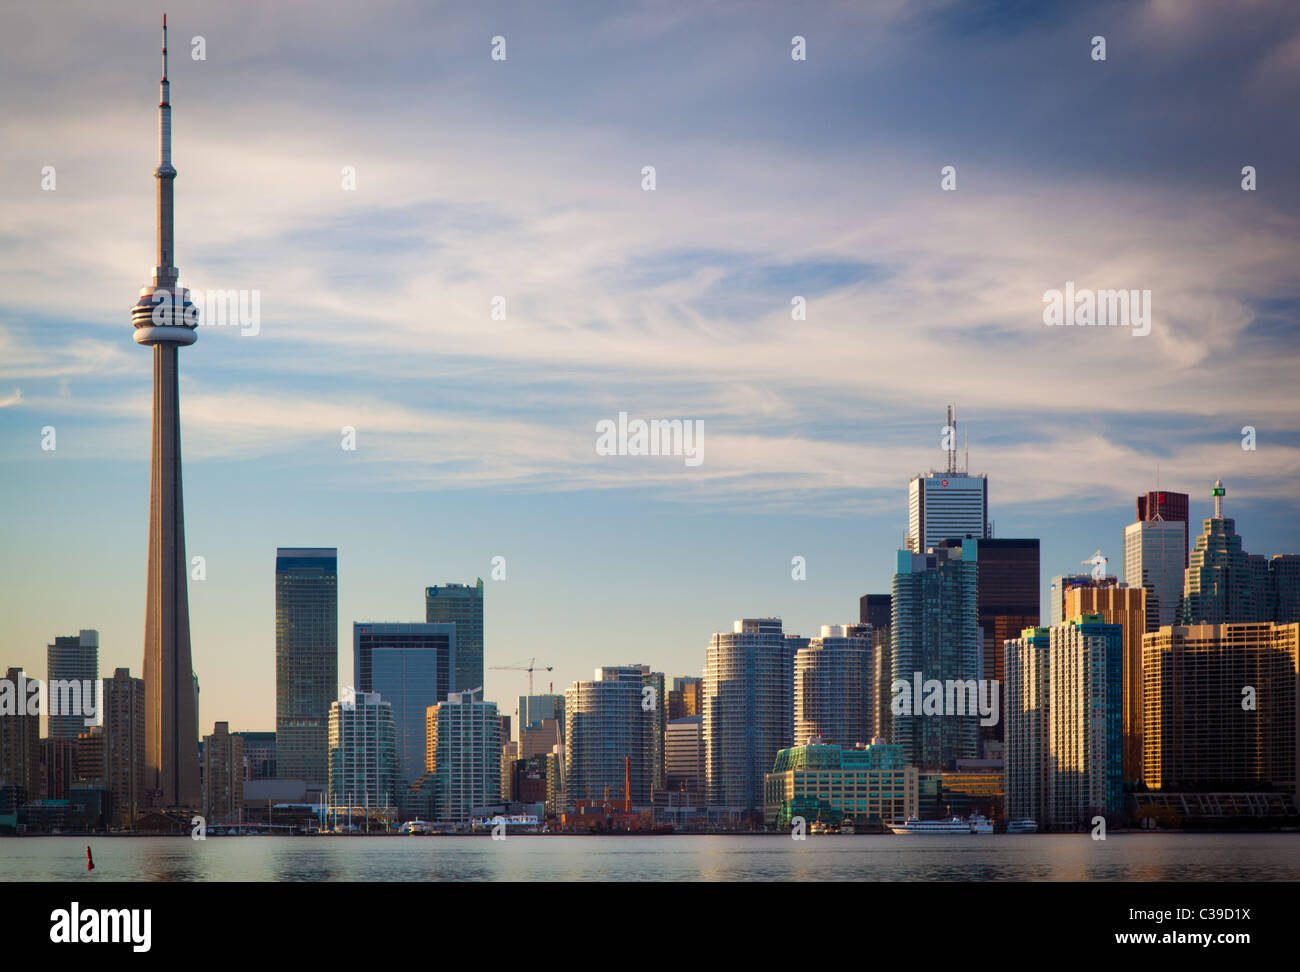 El centro de Toronto skyline, incluyendo la Torre CN y el Centro Rogers, como se ve en la tarde Foto de stock